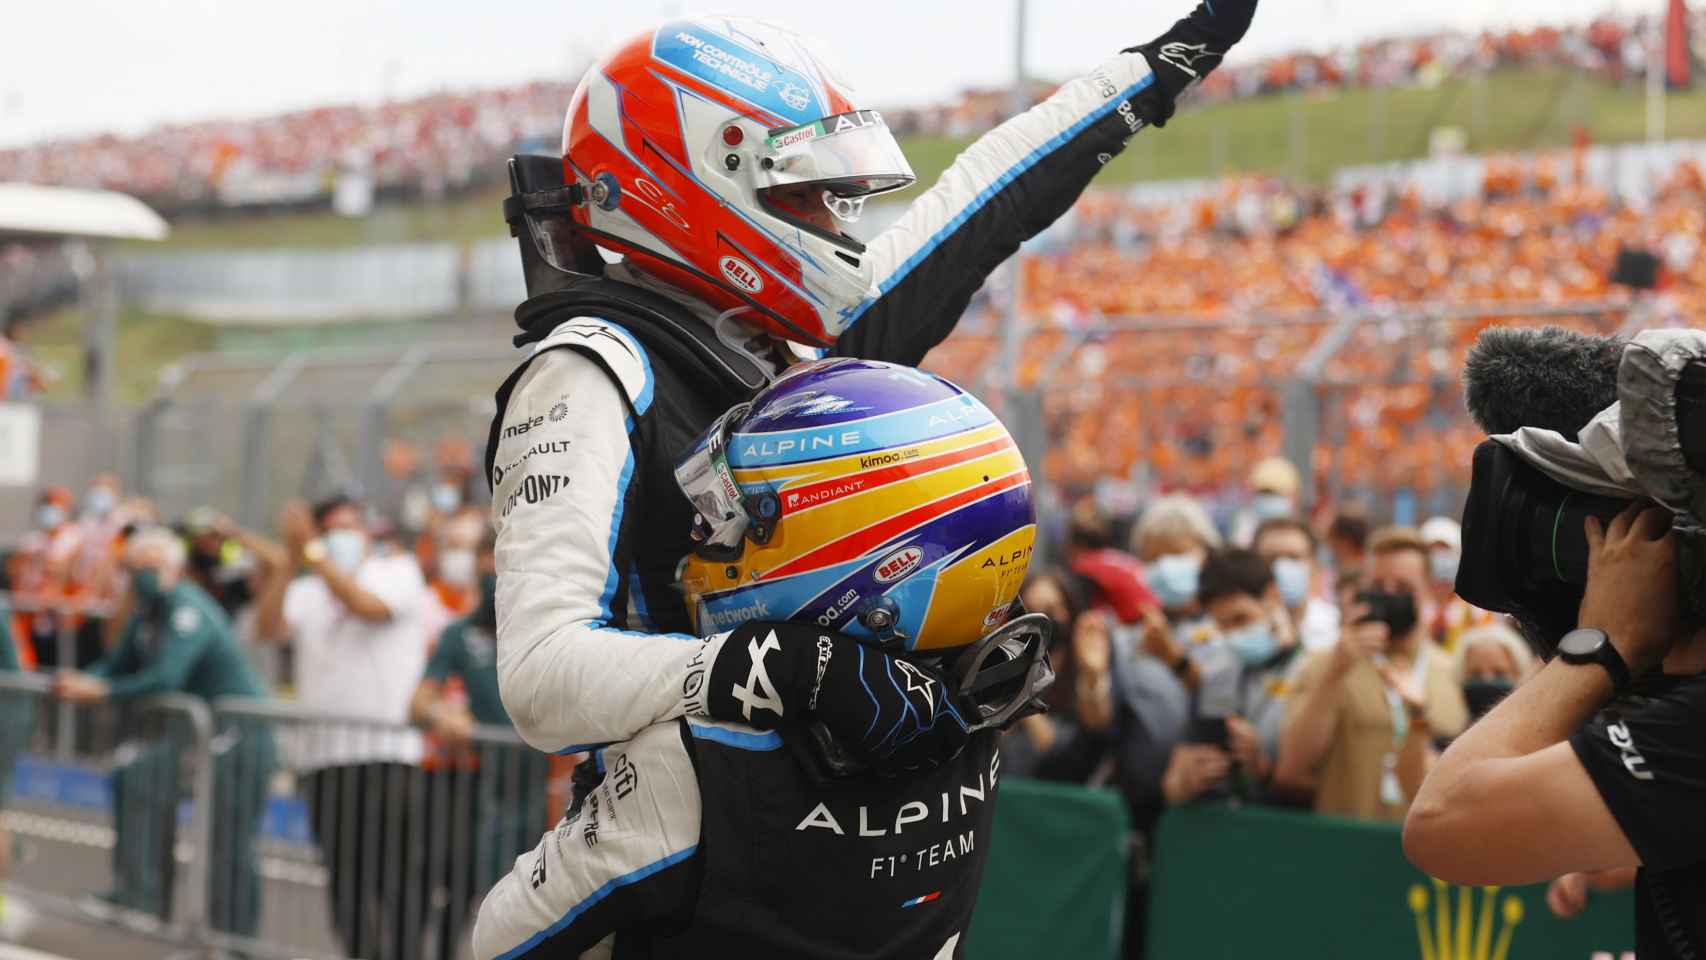 Fernando Alonso alza en brazos Esteban Ocon tras su victoria en el GP de Hungría de F1